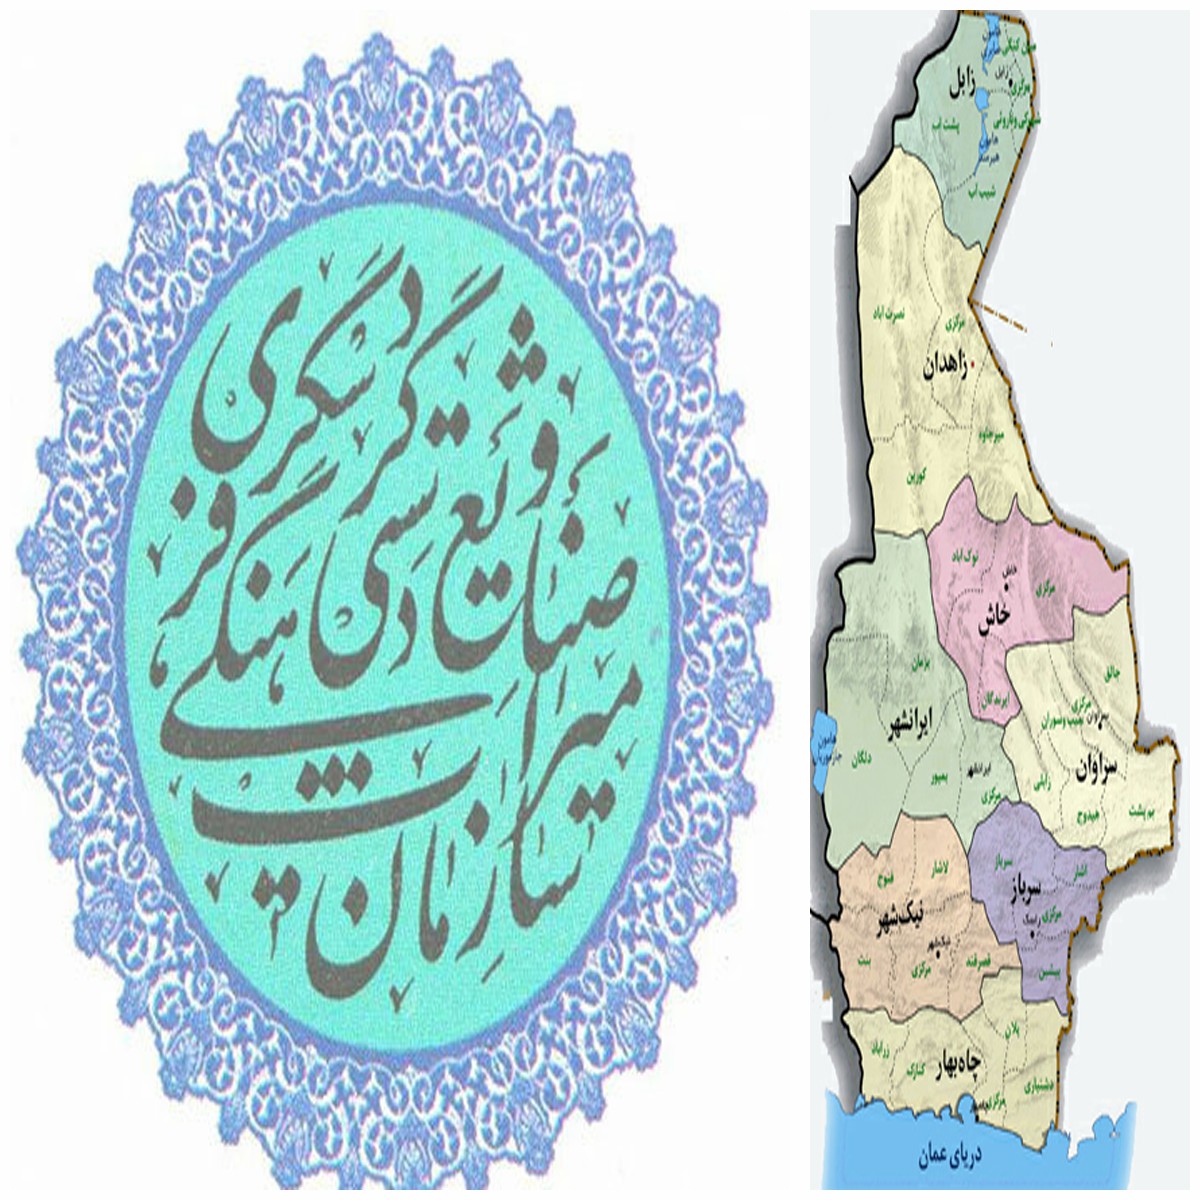 عملکرد ضعیف میراث فرهنگی و صنایع گردشگری در استان